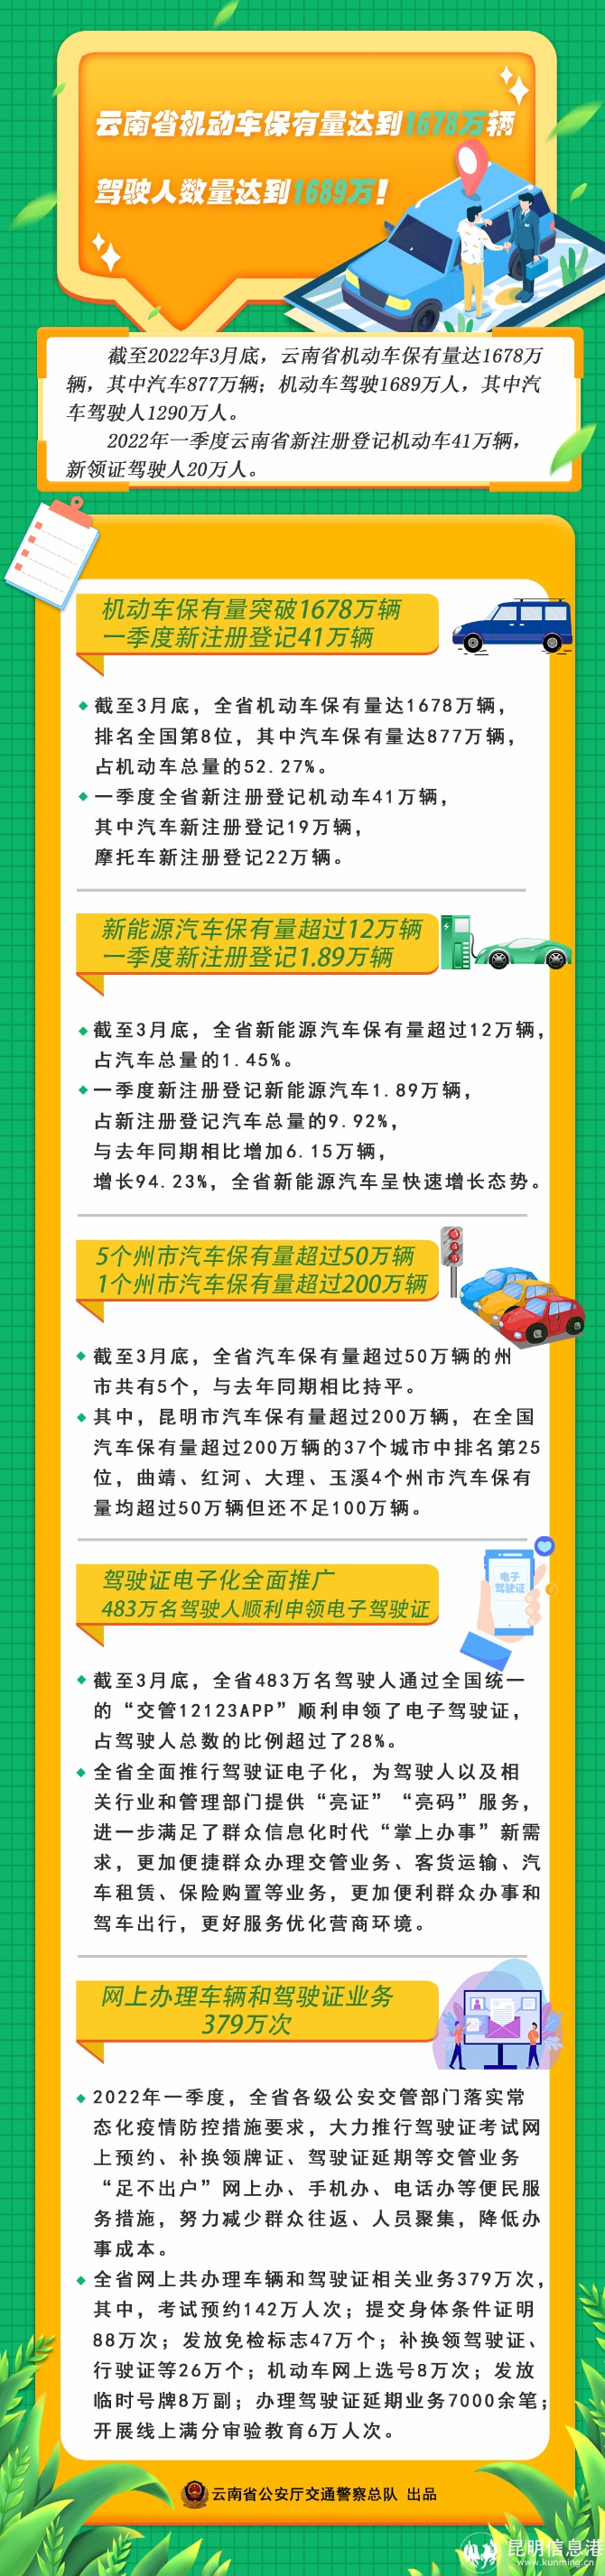 云南省机动车保有量达到1678万辆驾驶人数量1689万近世代数张禾瑞